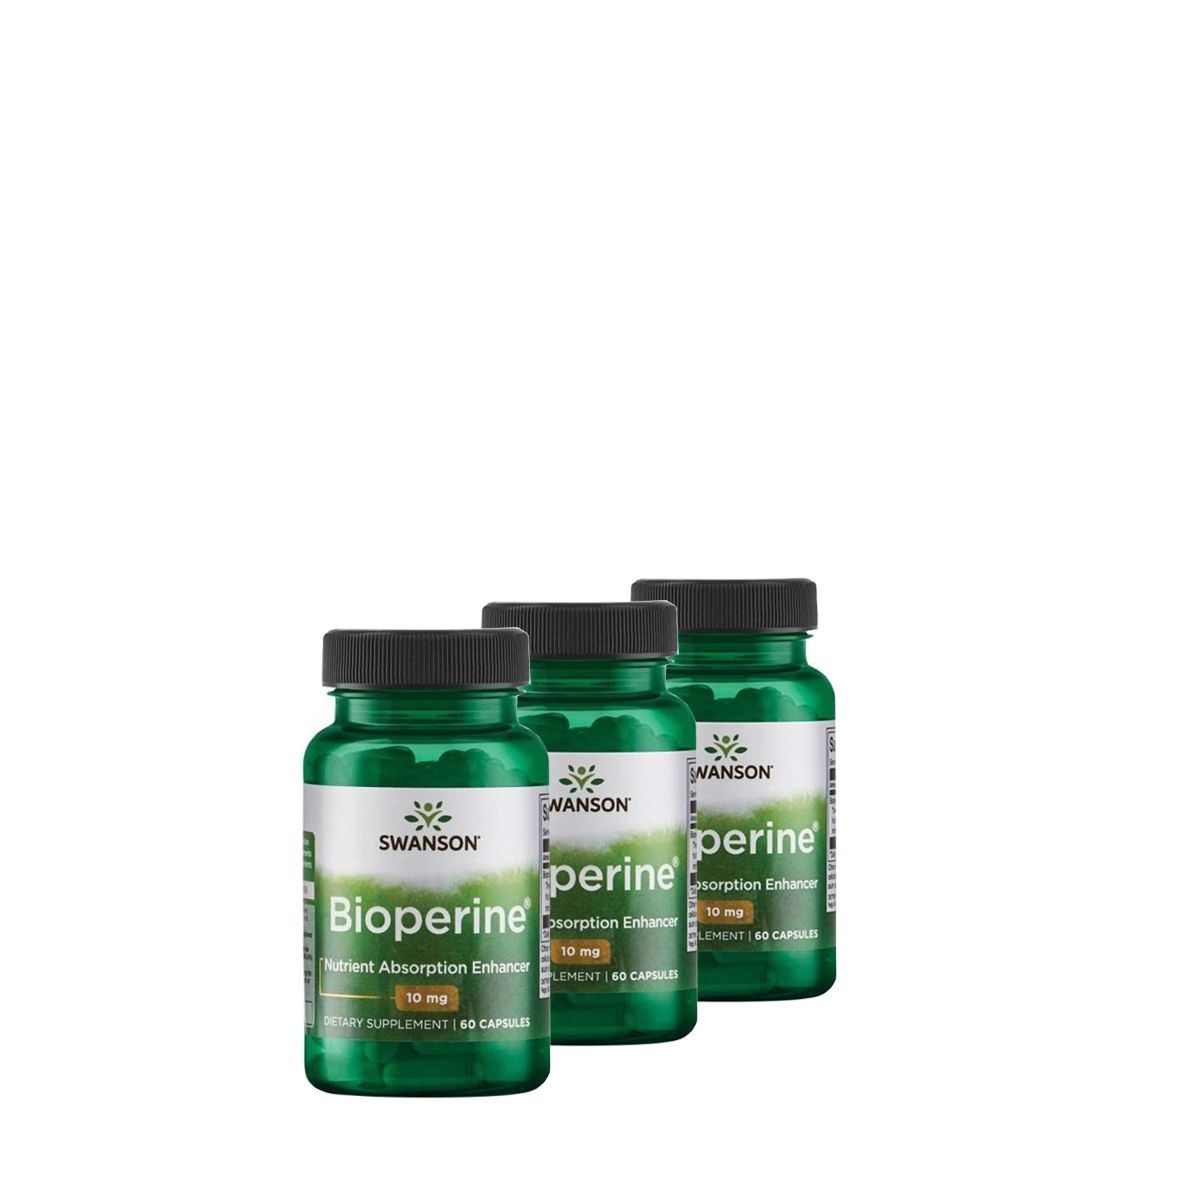 Felszívódás fokozó Bioperin 10 mg, Swanson Bioperine, 3x60 kapszula